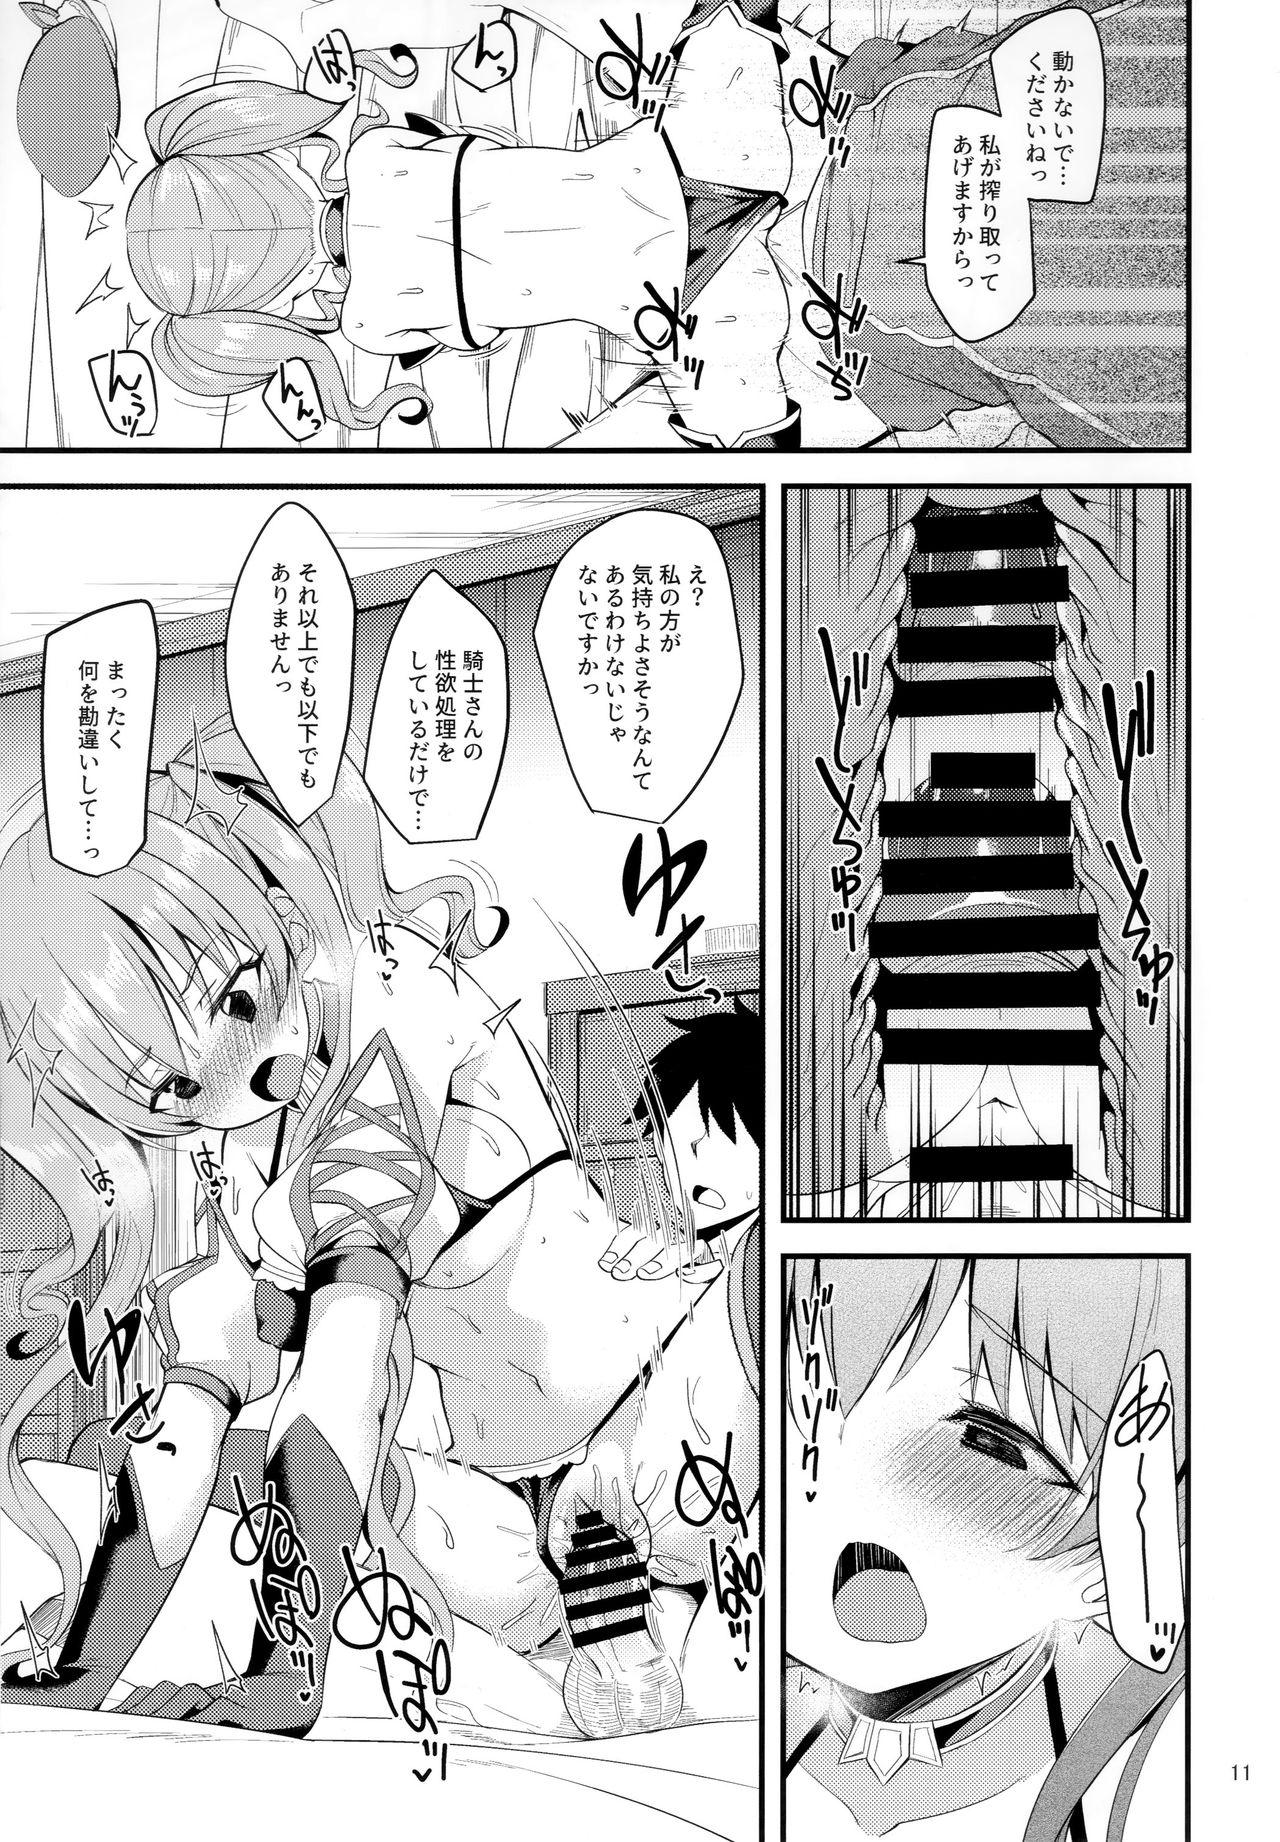 Tesao Tsumugi Make Heroine Move!! 02 - Princess connect Caught - Page 10